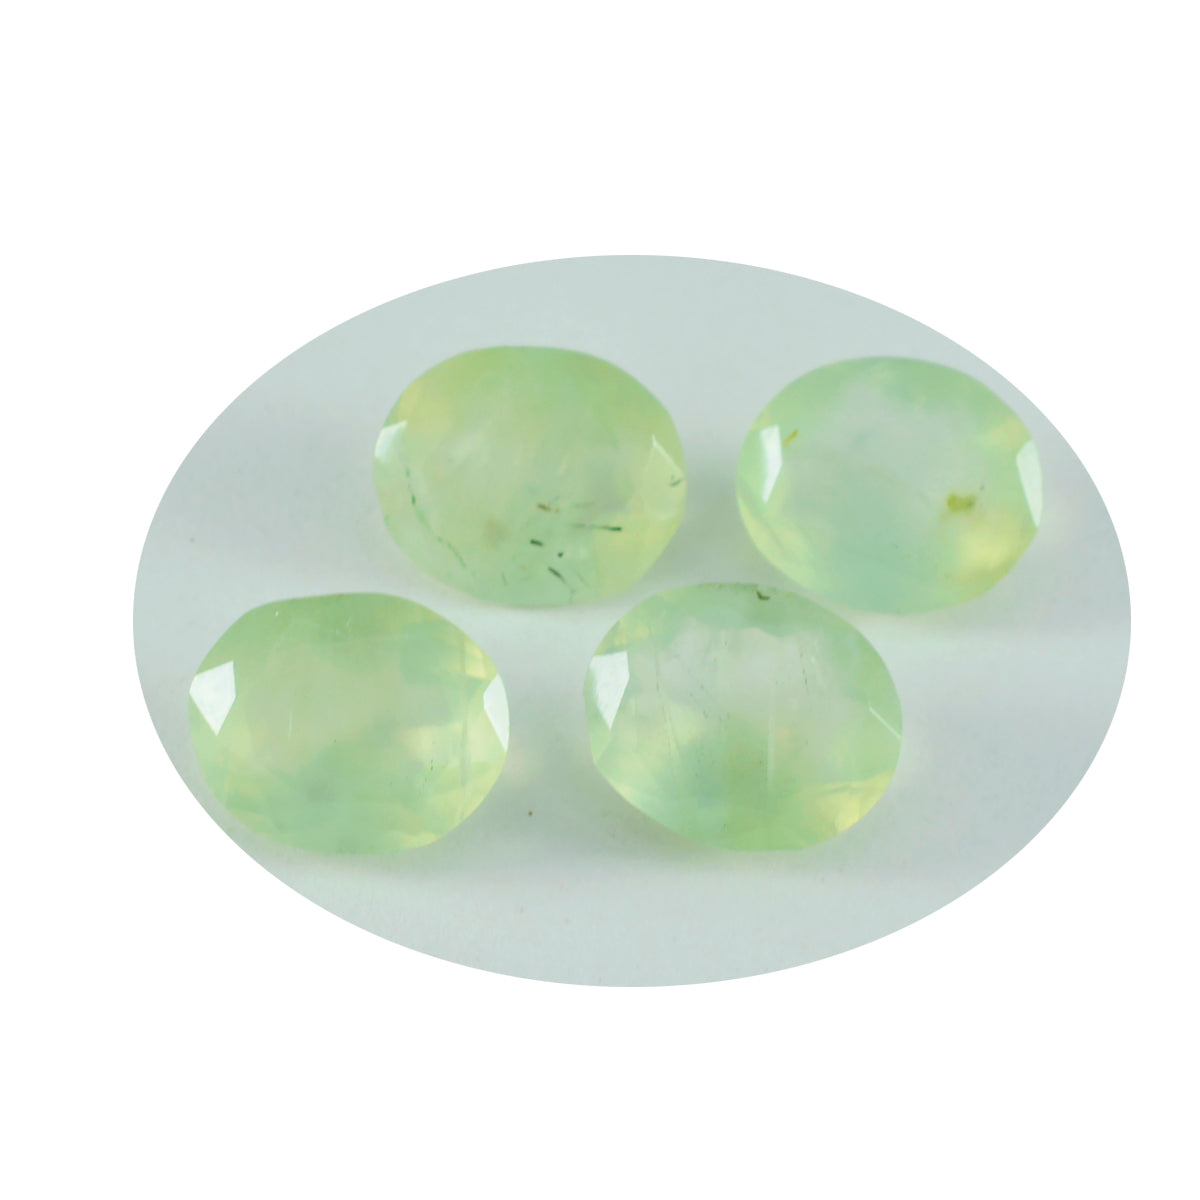 riyogems 1pc préhnite verte facettée 10x14 mm forme ovale jolies pierres précieuses de qualité